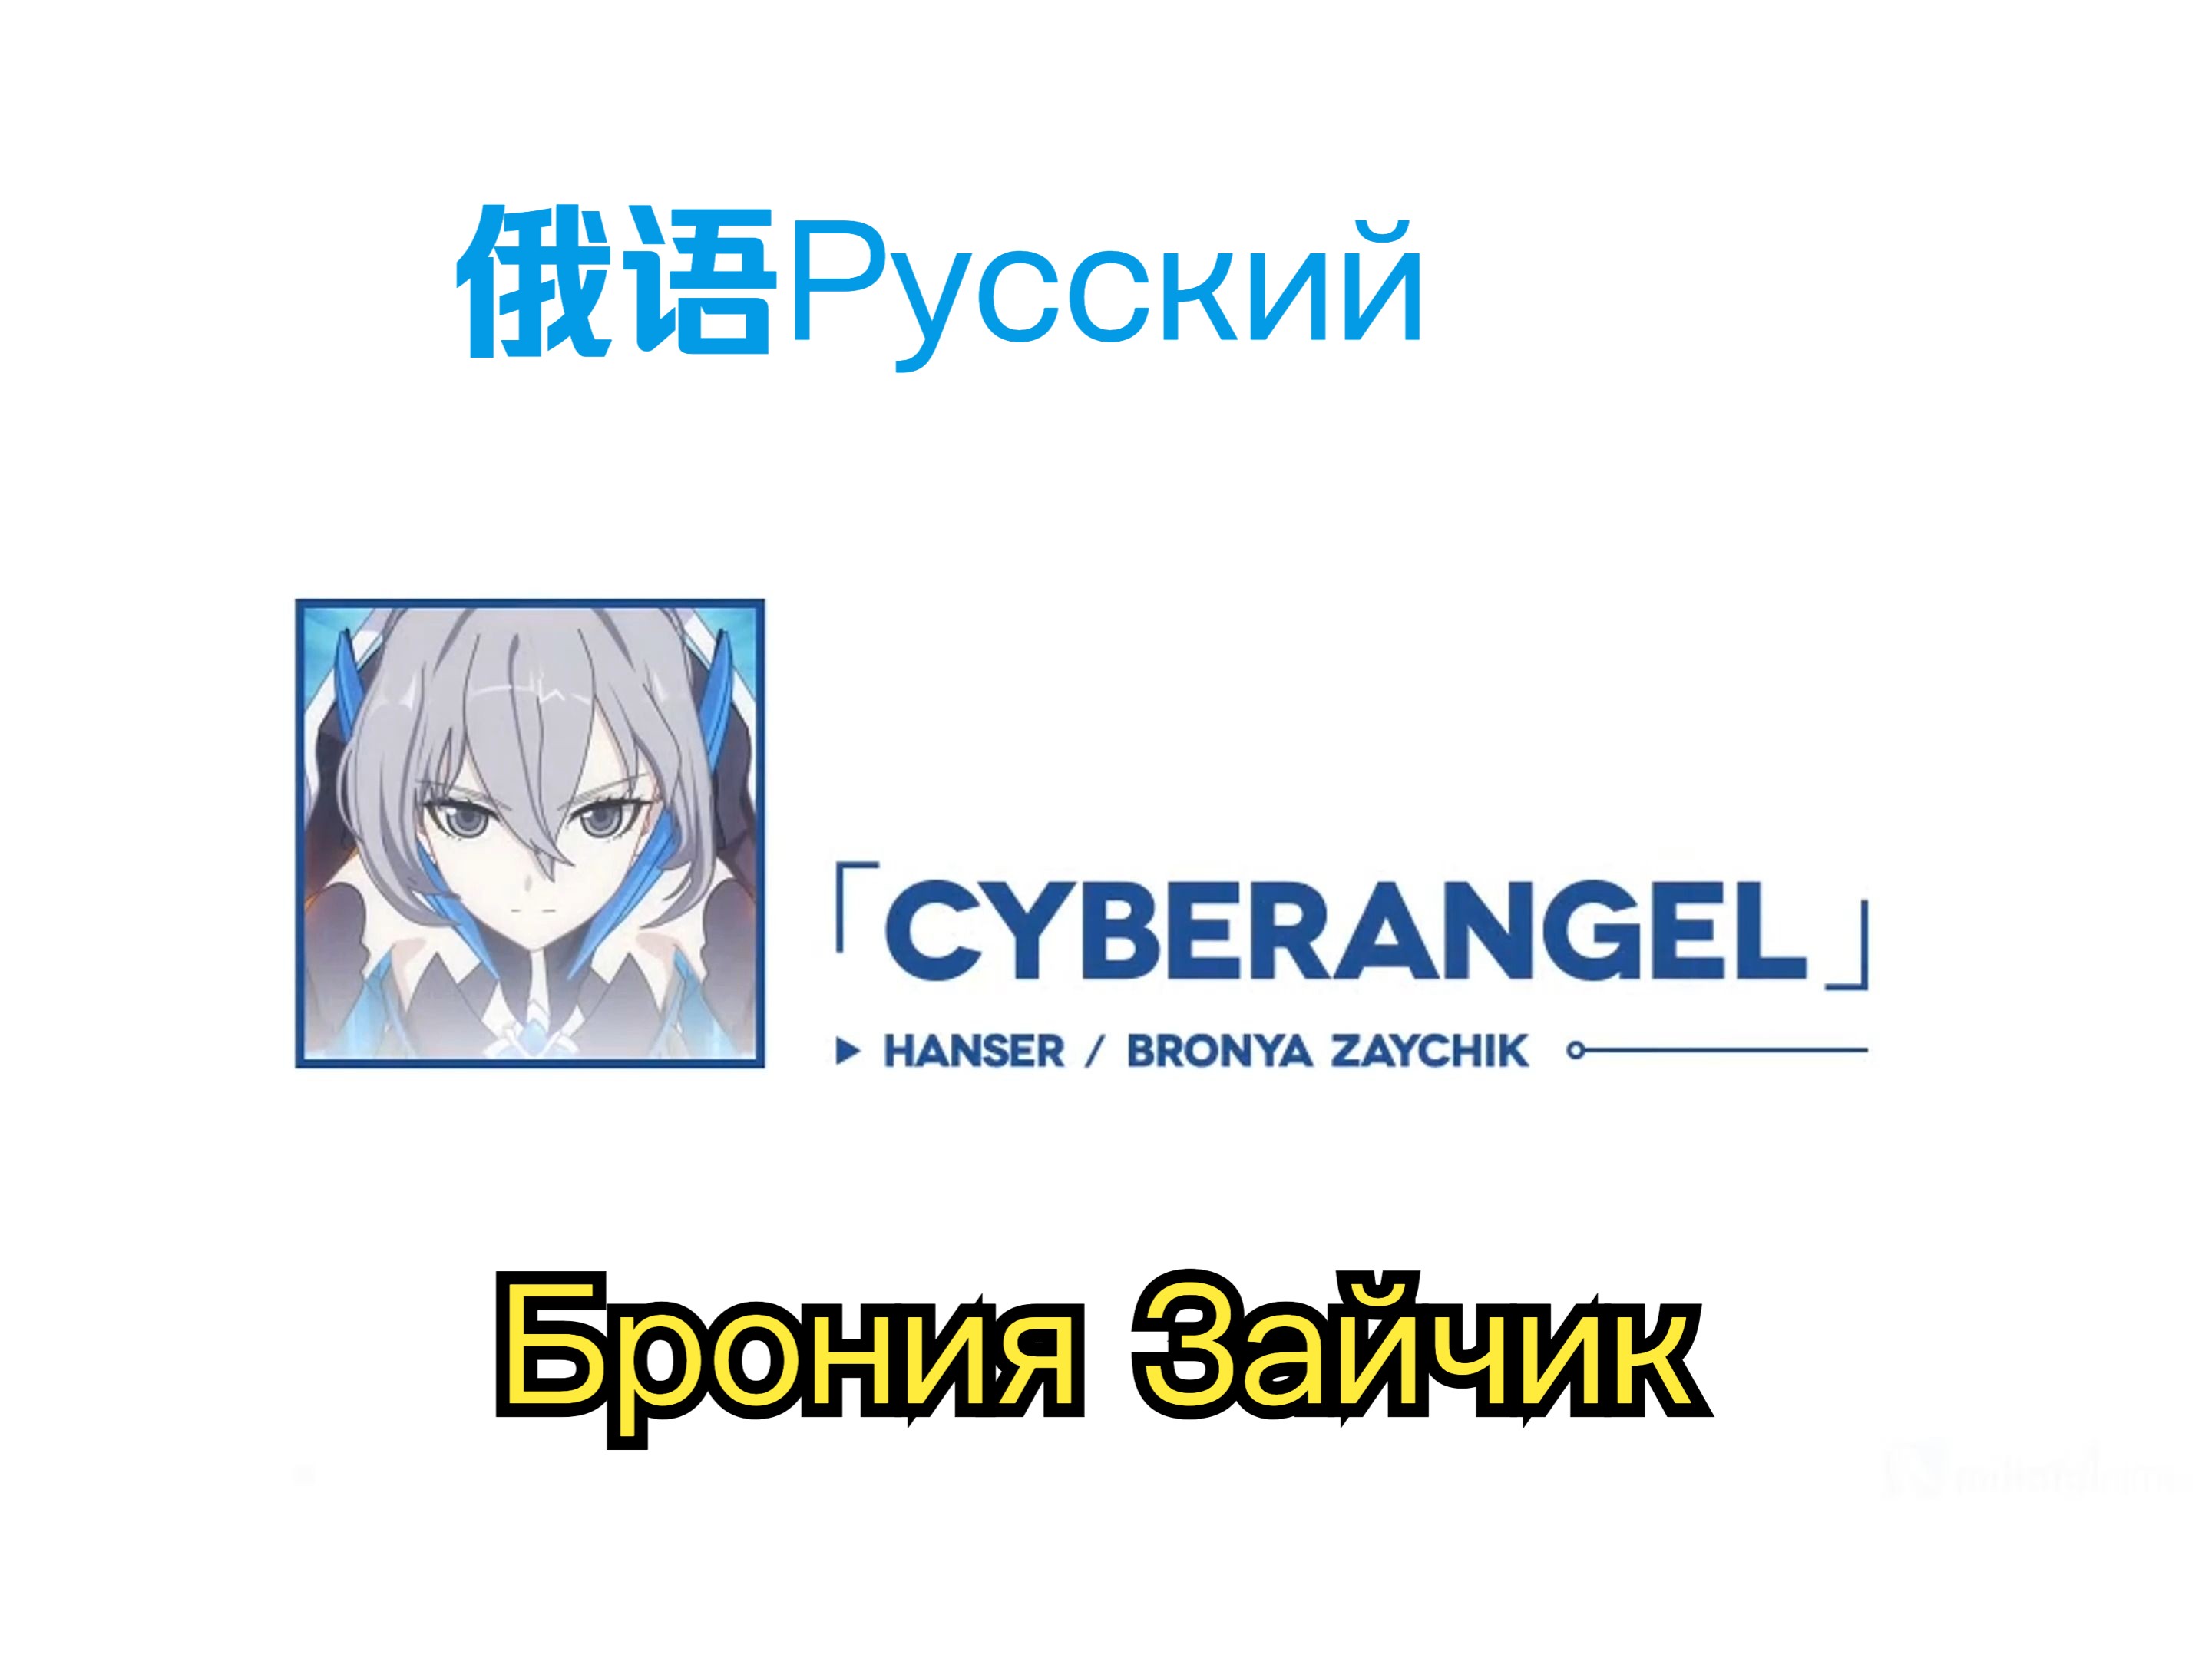 还是俄语对味，这才是正版的CyberAngel